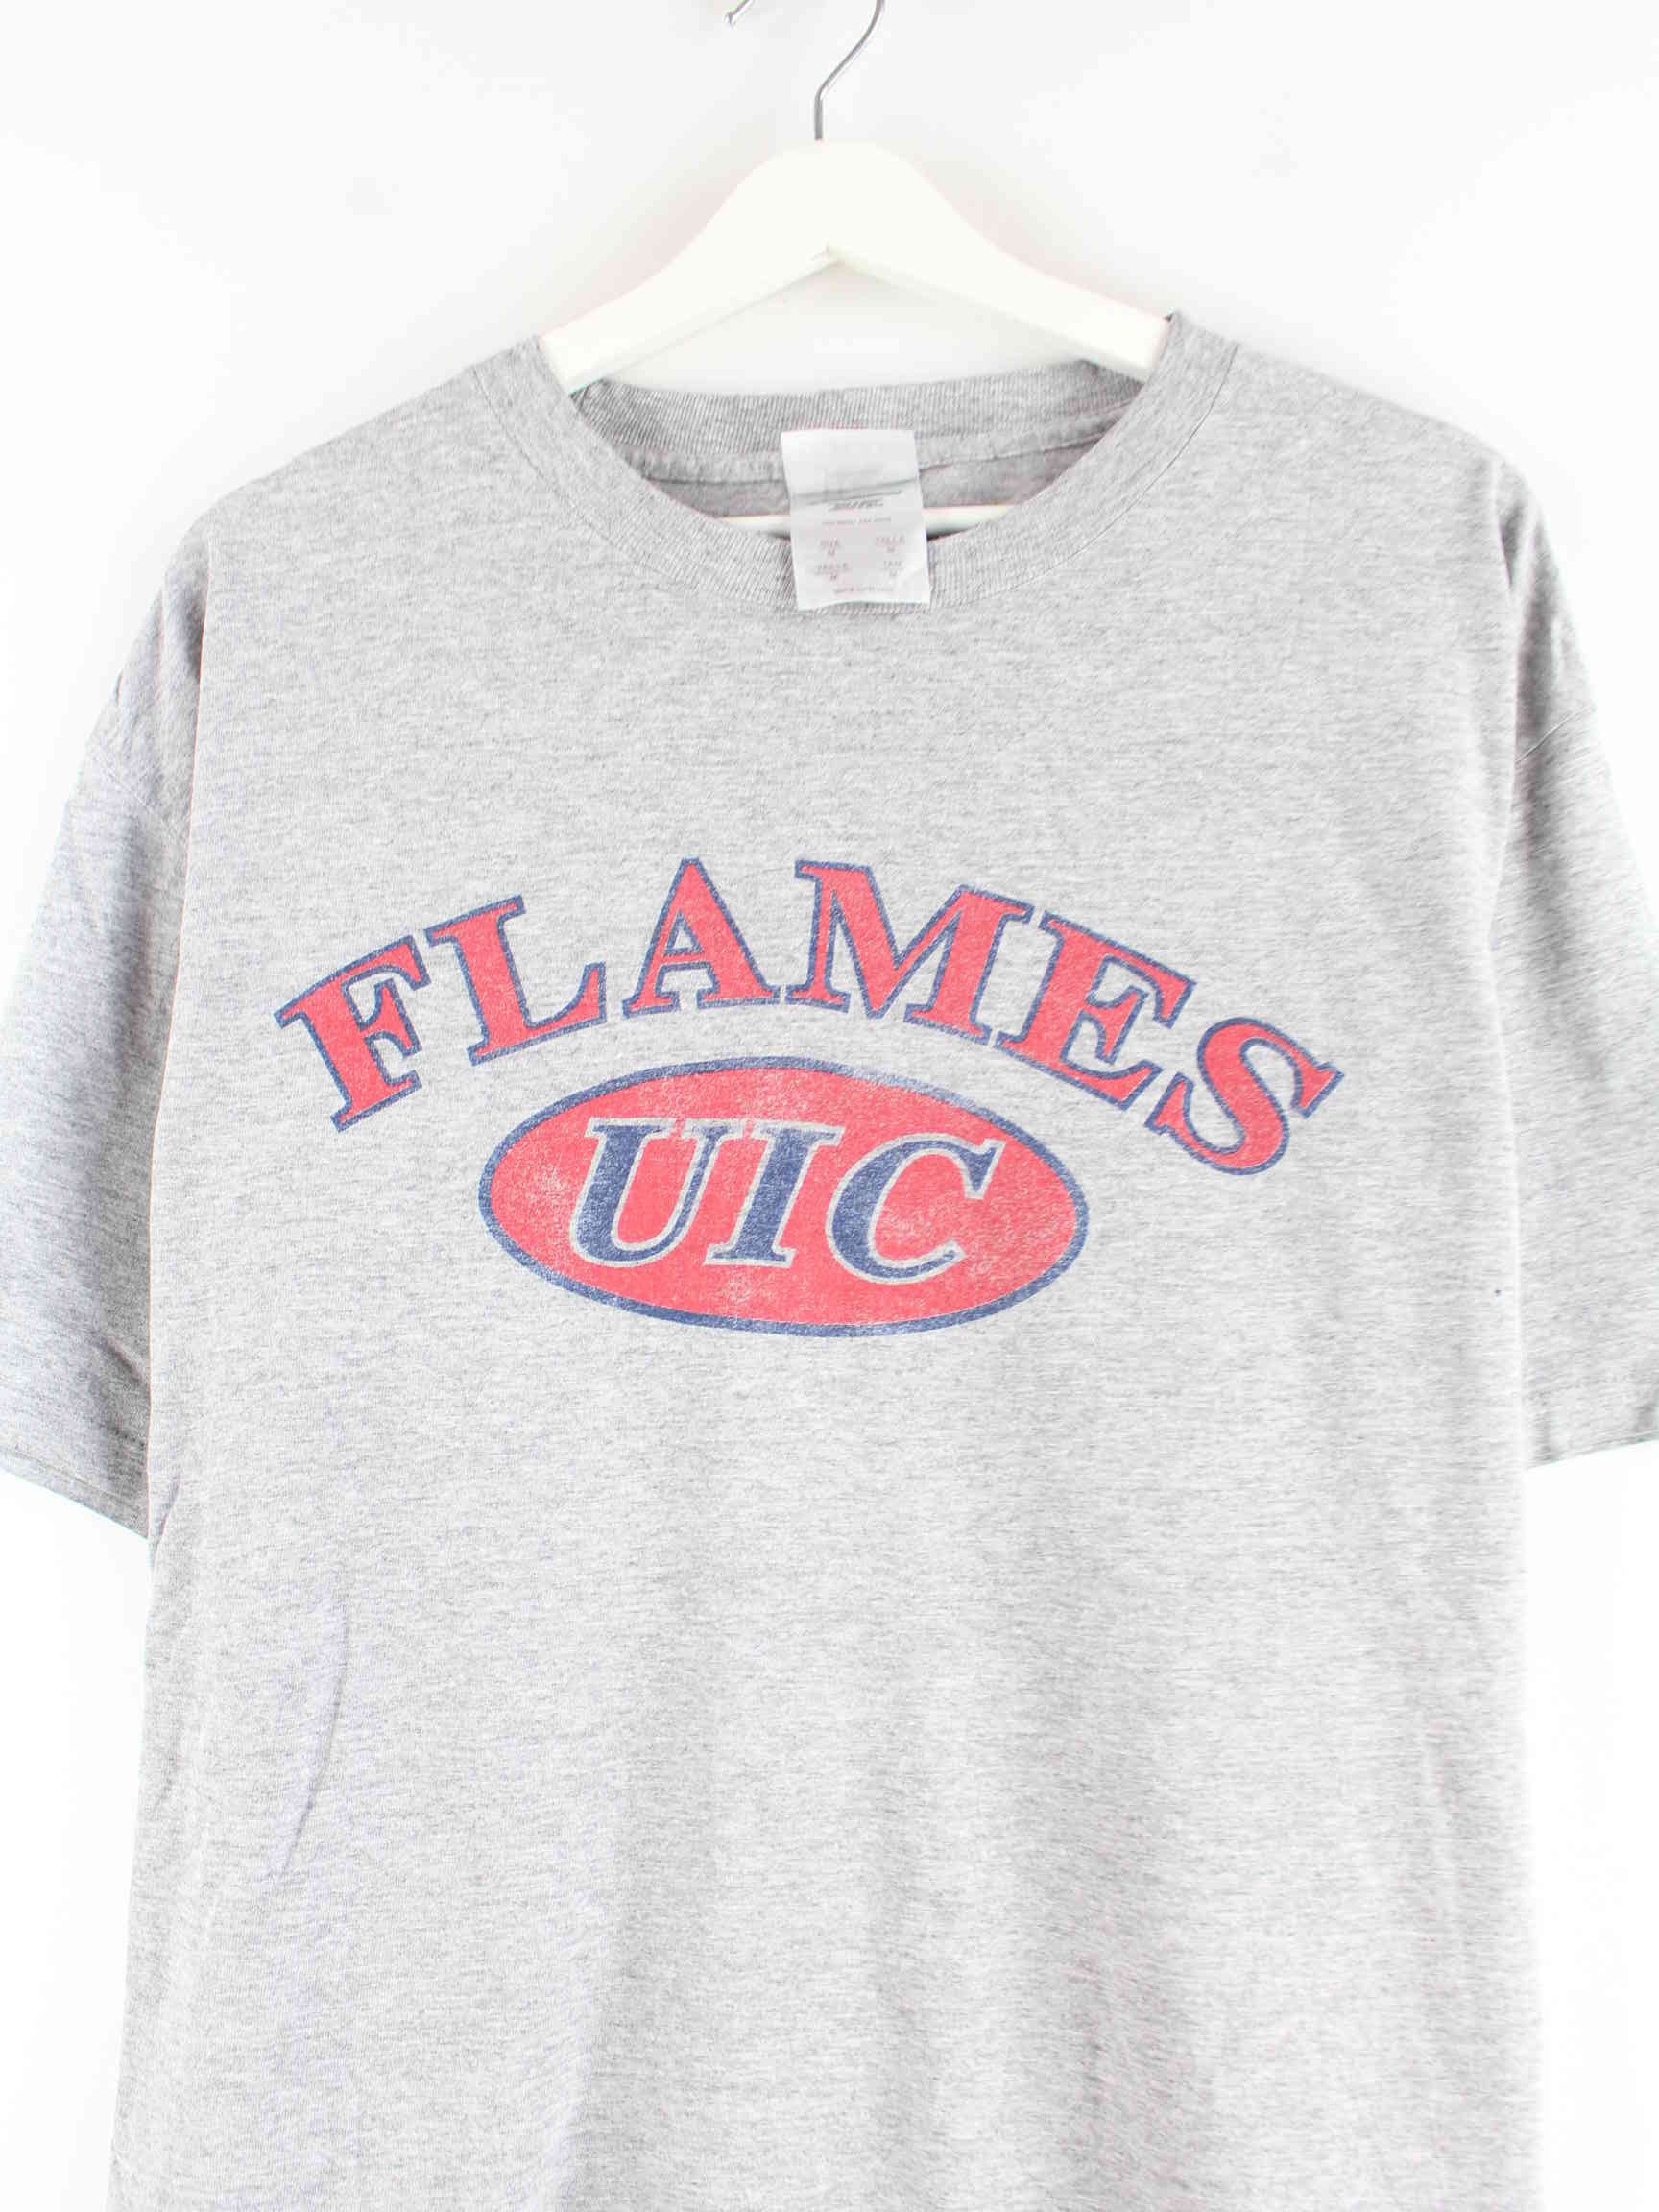 Adidas Flames UIC Print T-Shirt Grau M (detail image 1)